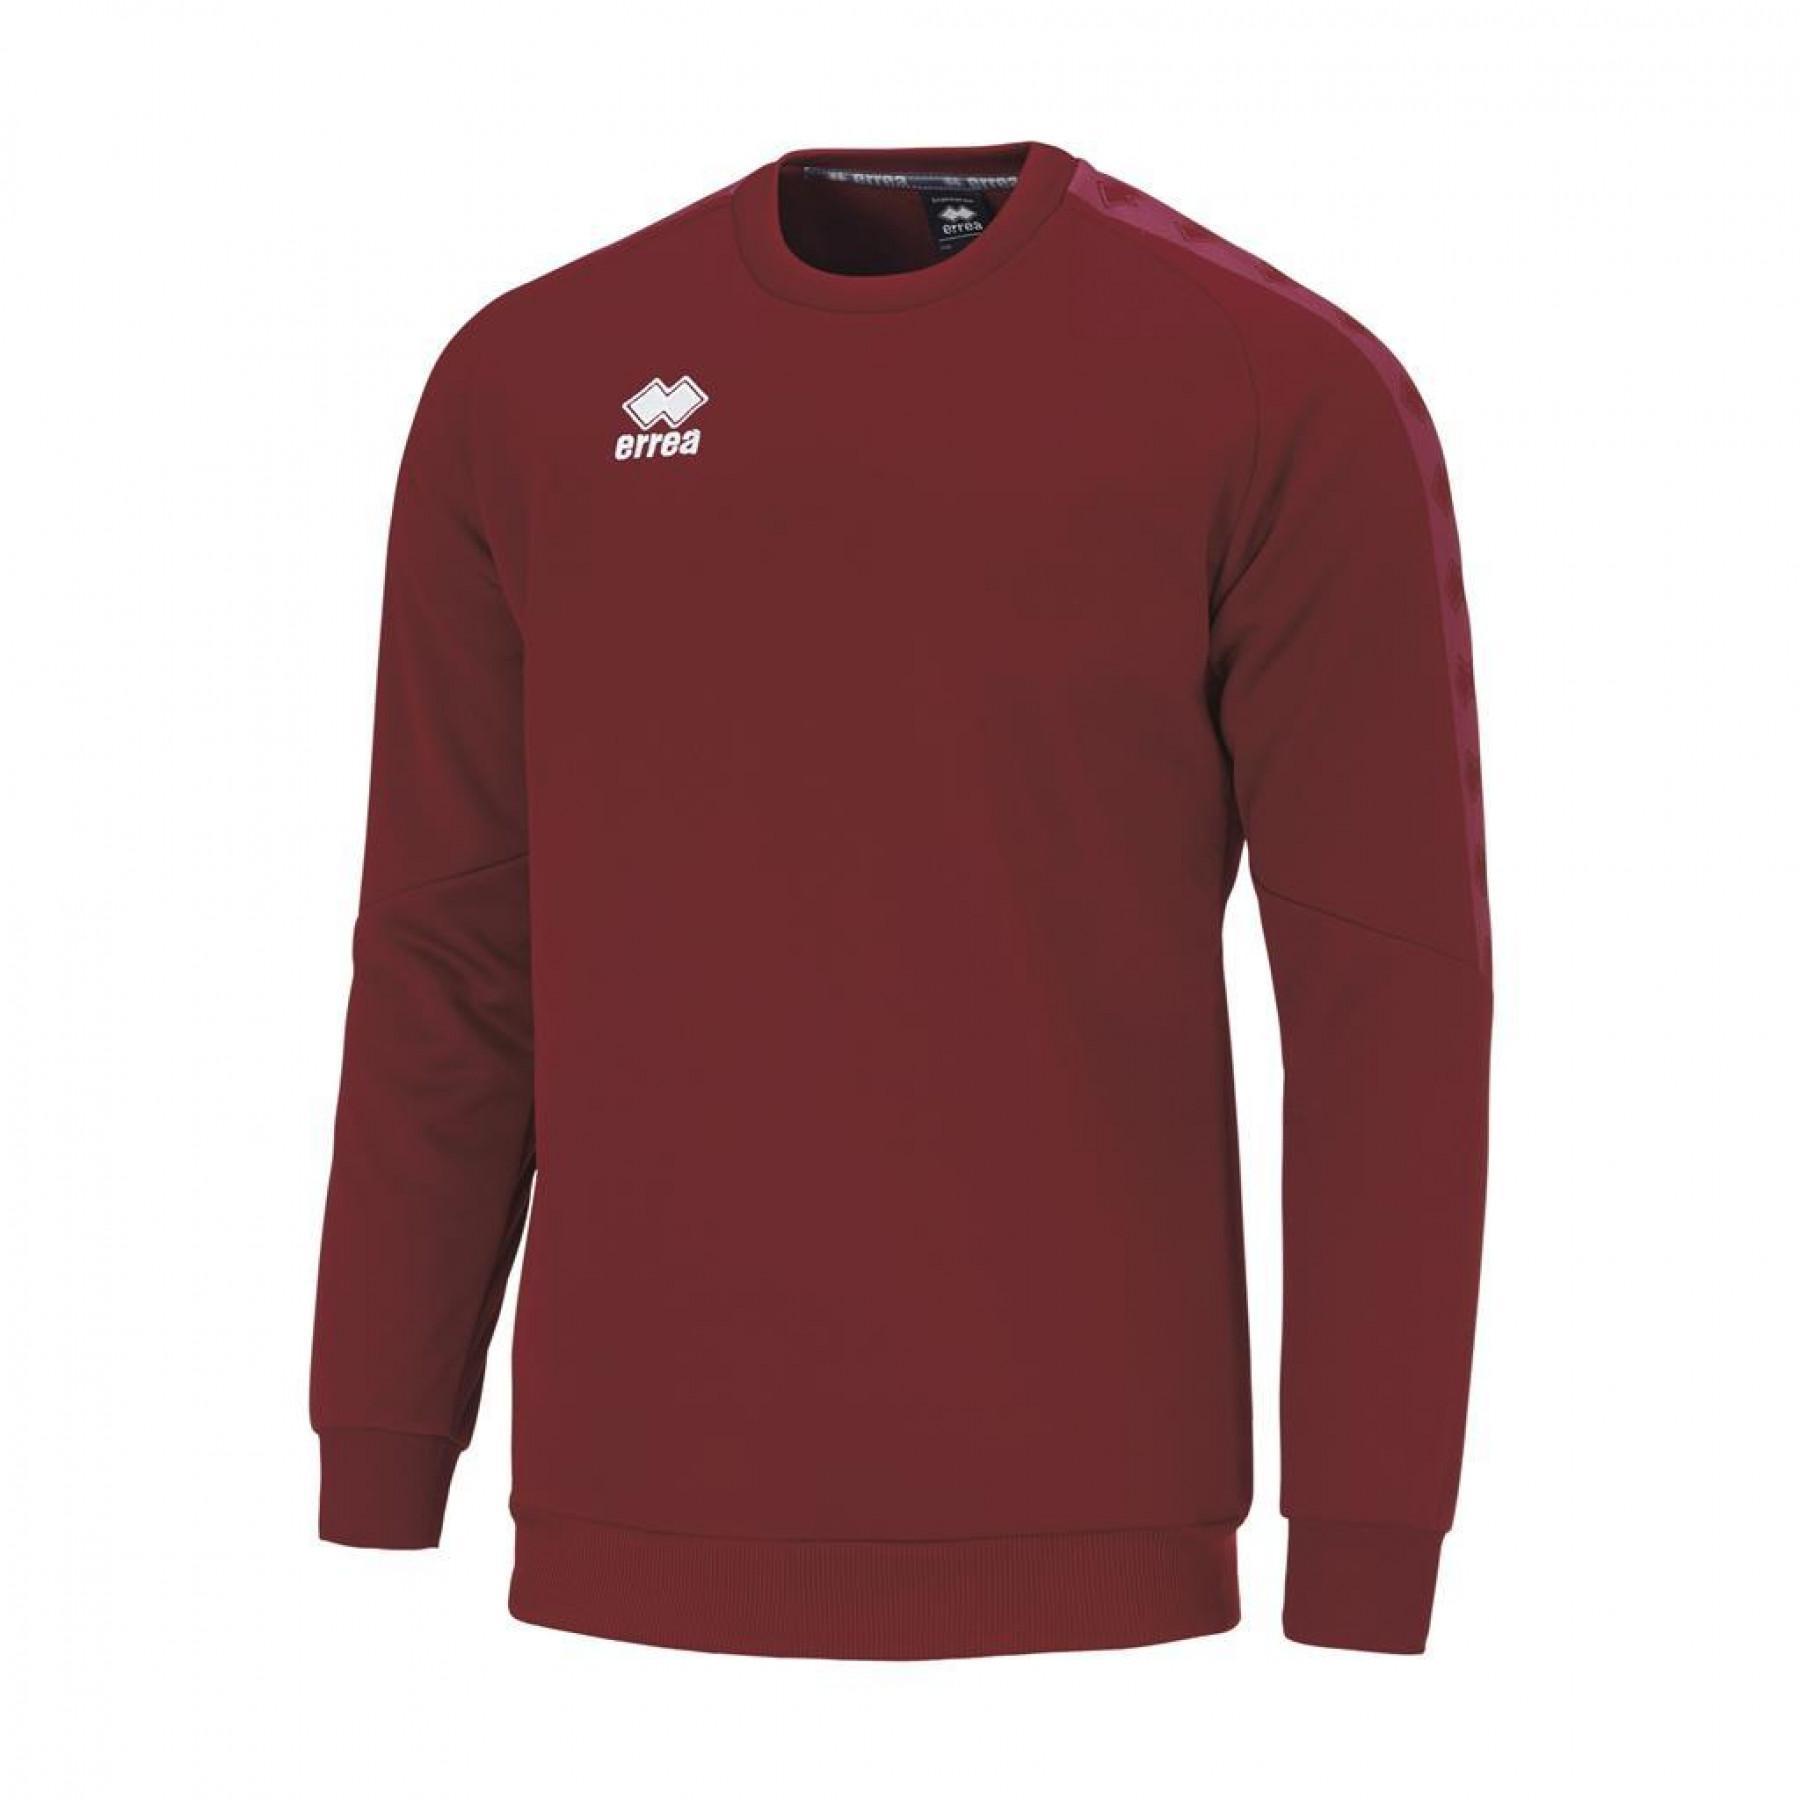 Sweatshirt Errea Spirit - Errea - Brands - Handball wear